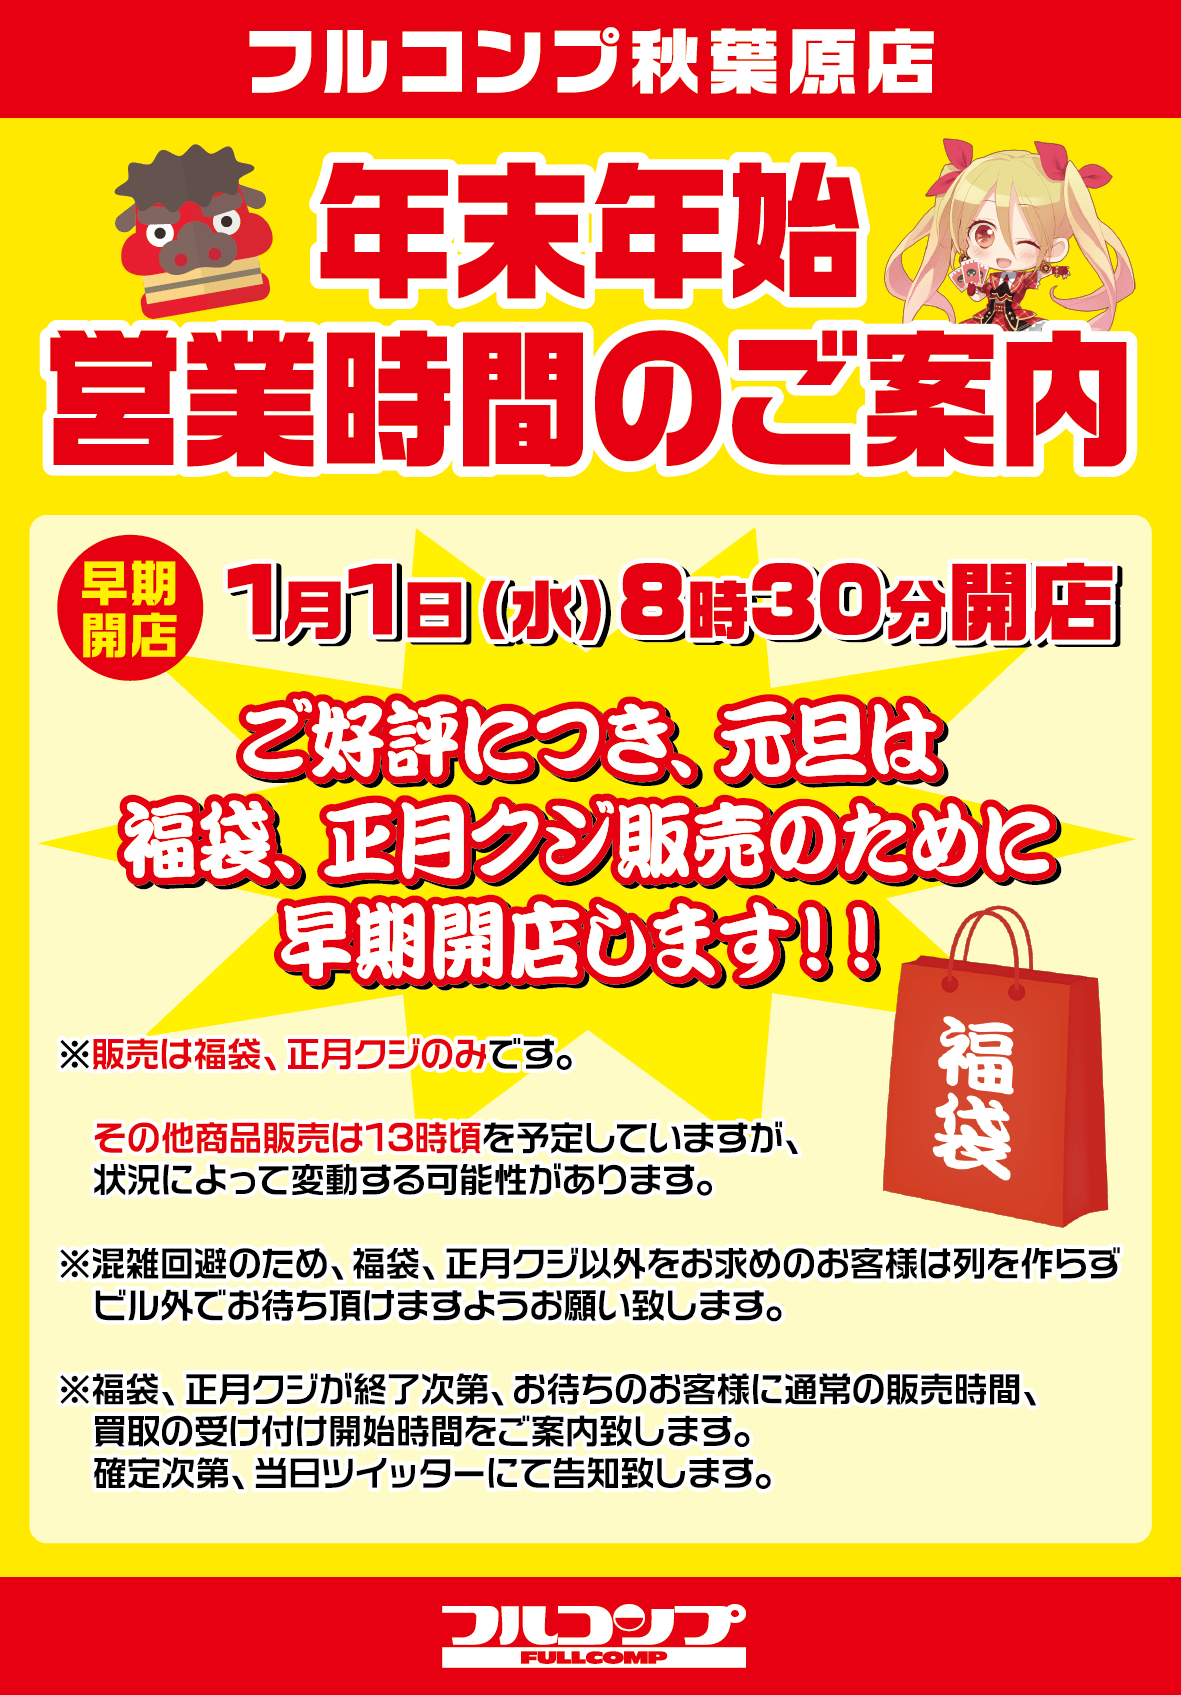 【正月臨時】秋葉原店営業時間変更のお知らせ